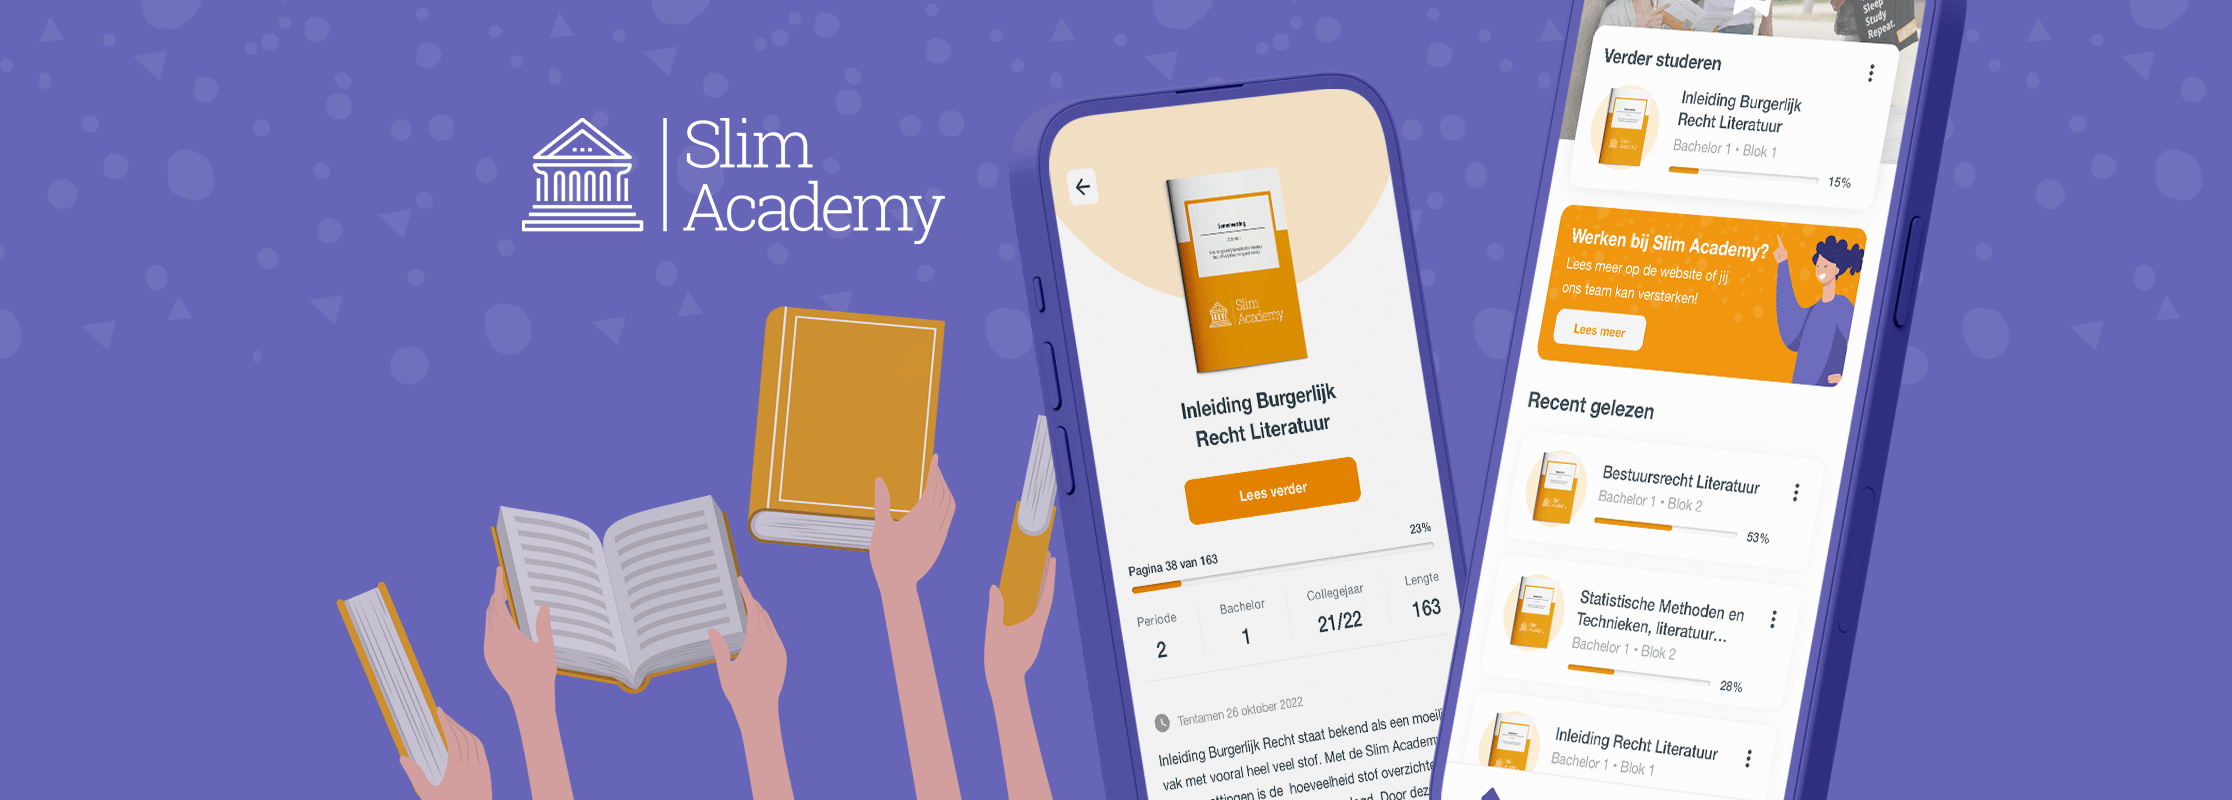 Slim Academy: hét steunprogramma voor studenten, nu ook als app